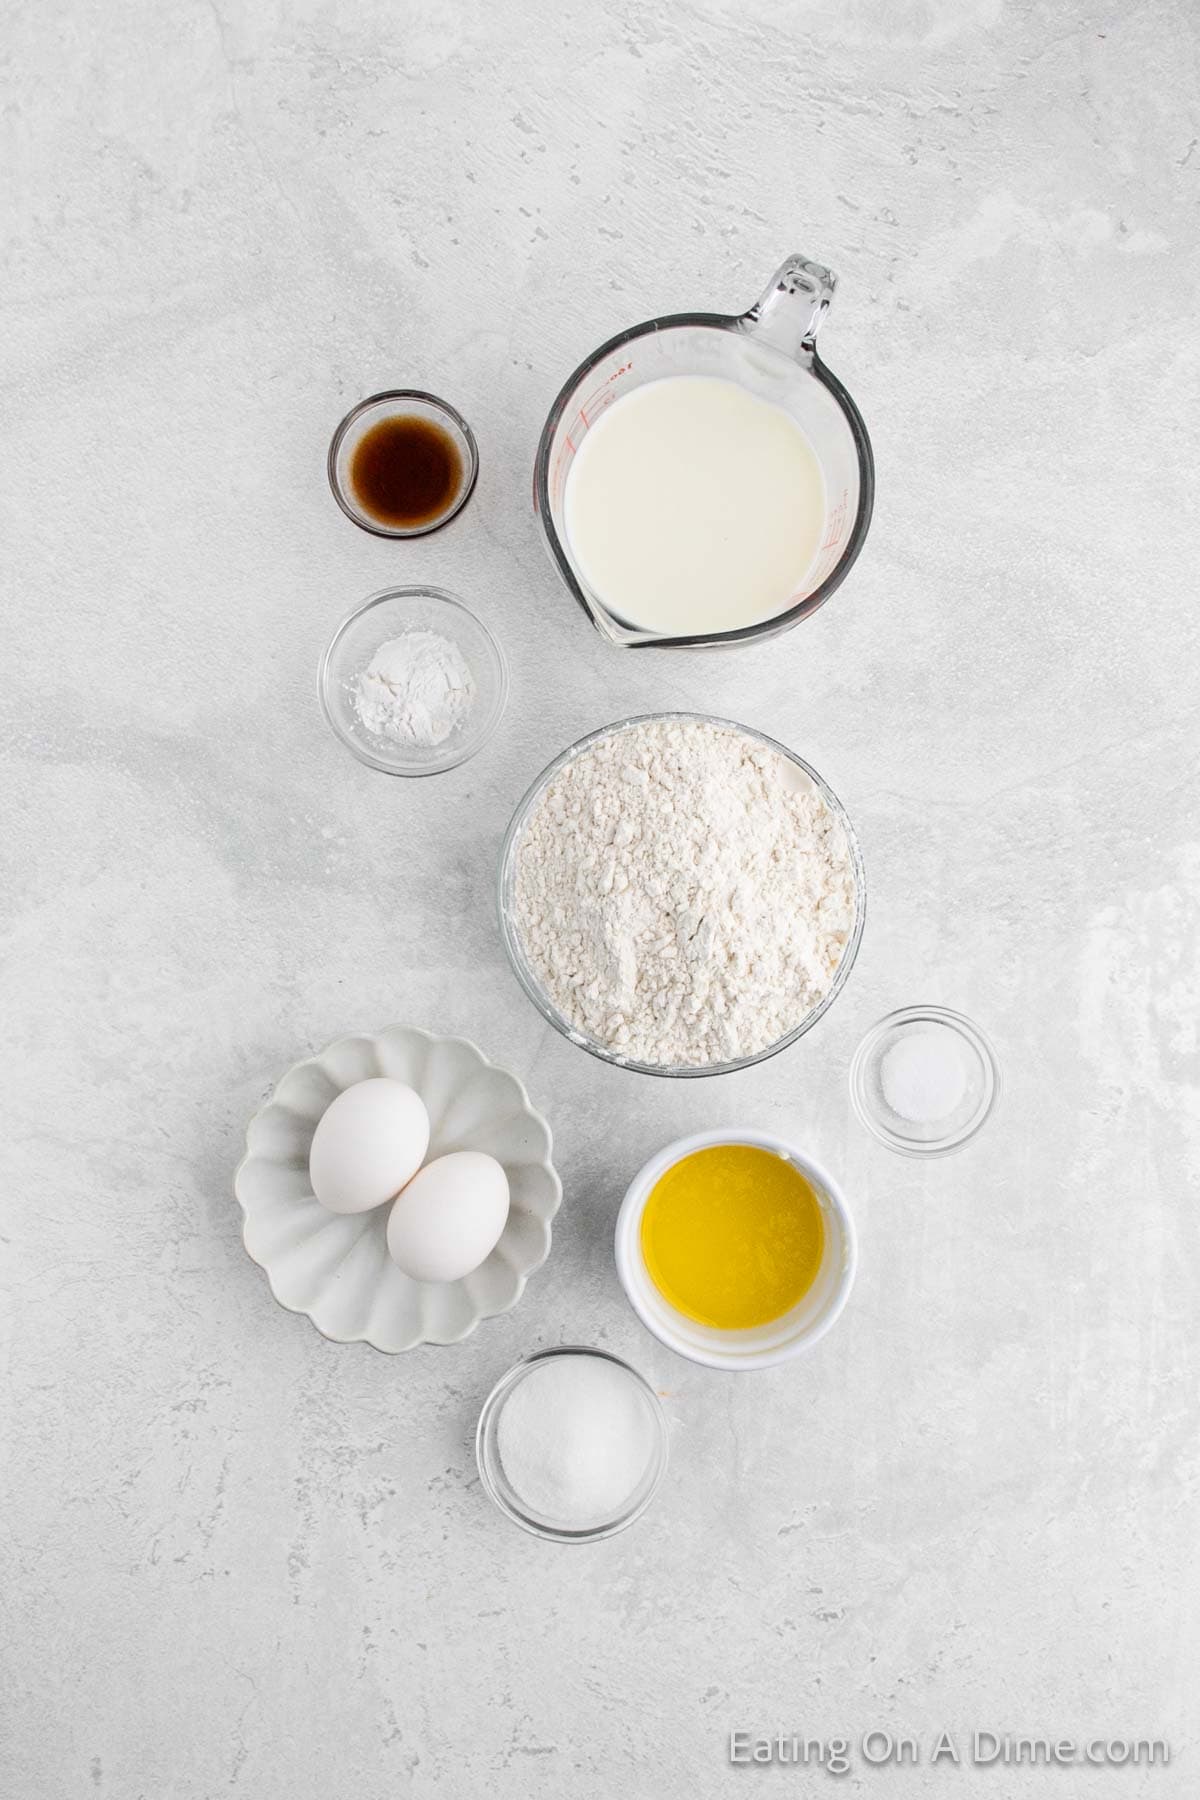 Ingredients - Sugar, flour, baking powder, salt, milk, butter, eggs, vanilla